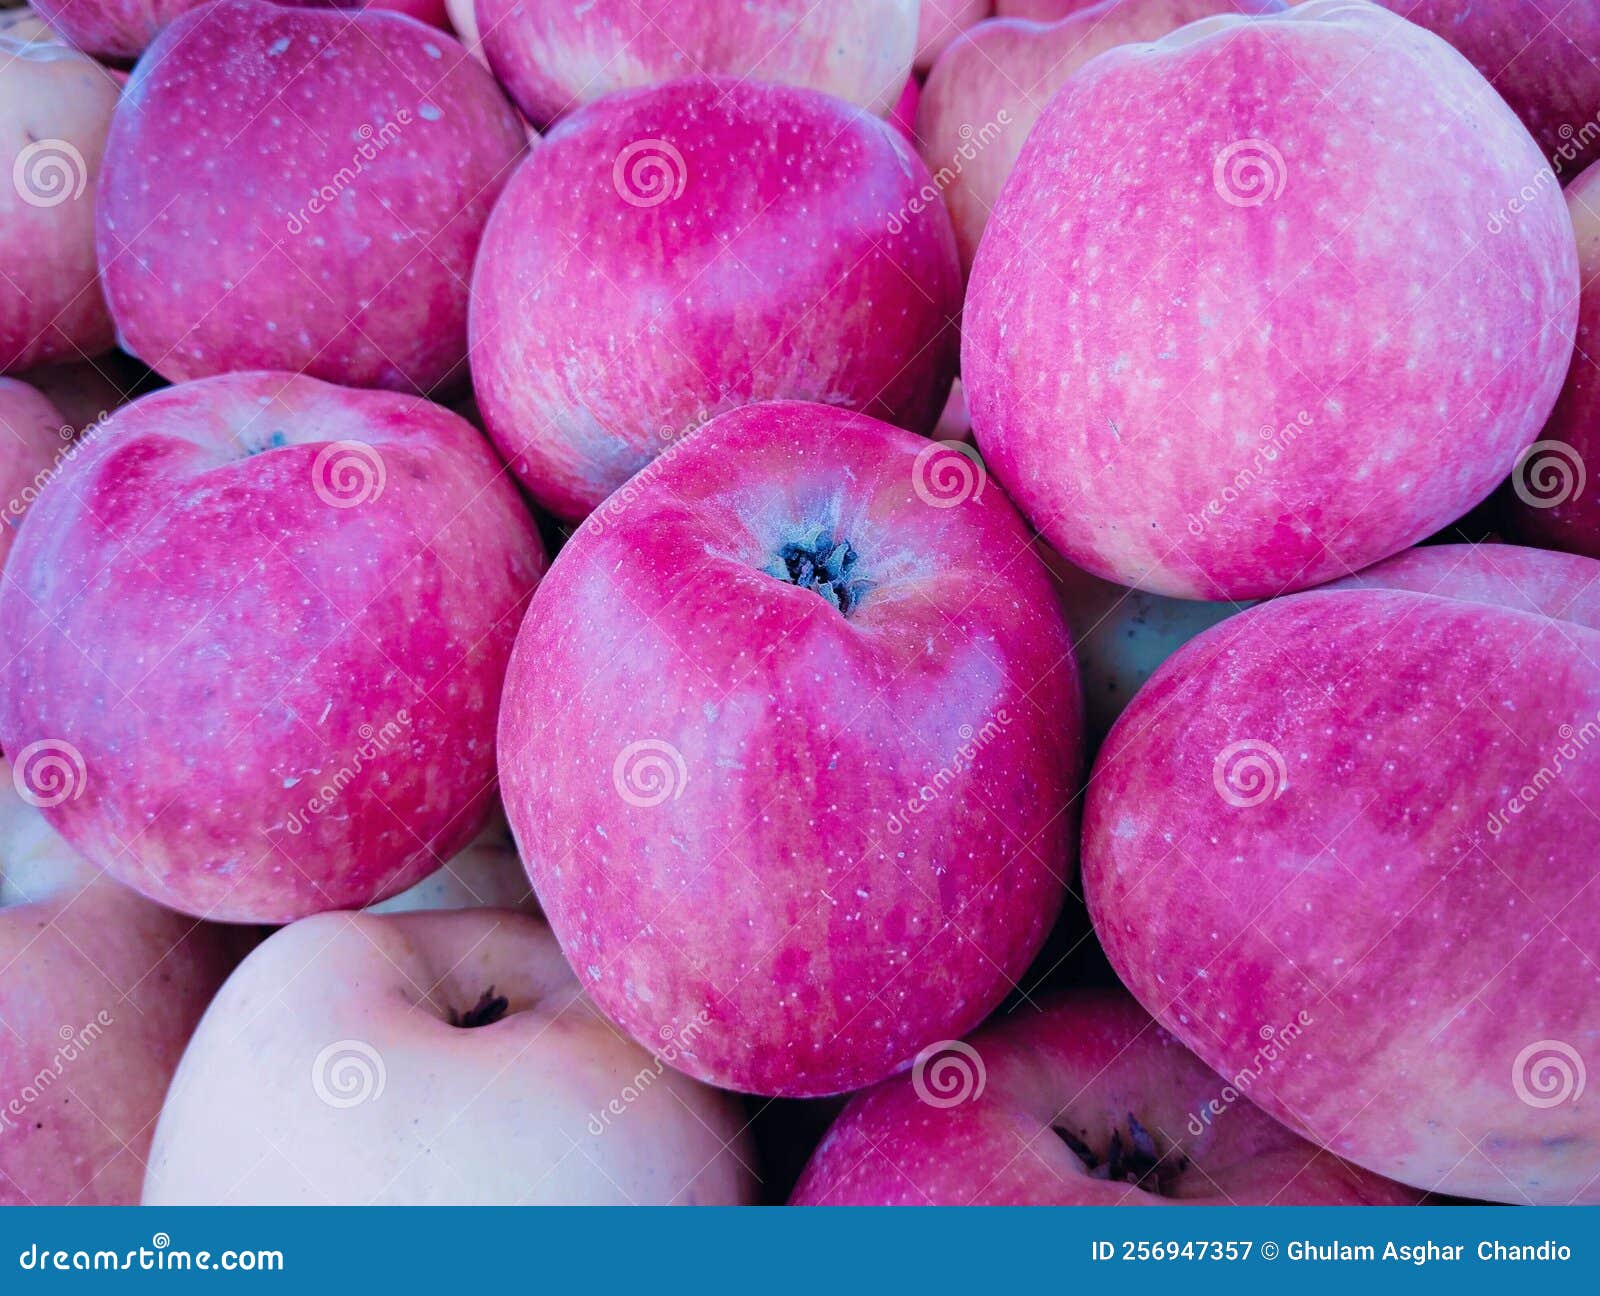 apples fruit, red malus domestica, seb, apel, apfel, manzana, la pomme, tafaha, yabloko, ringo no mi, la mela closeup view image